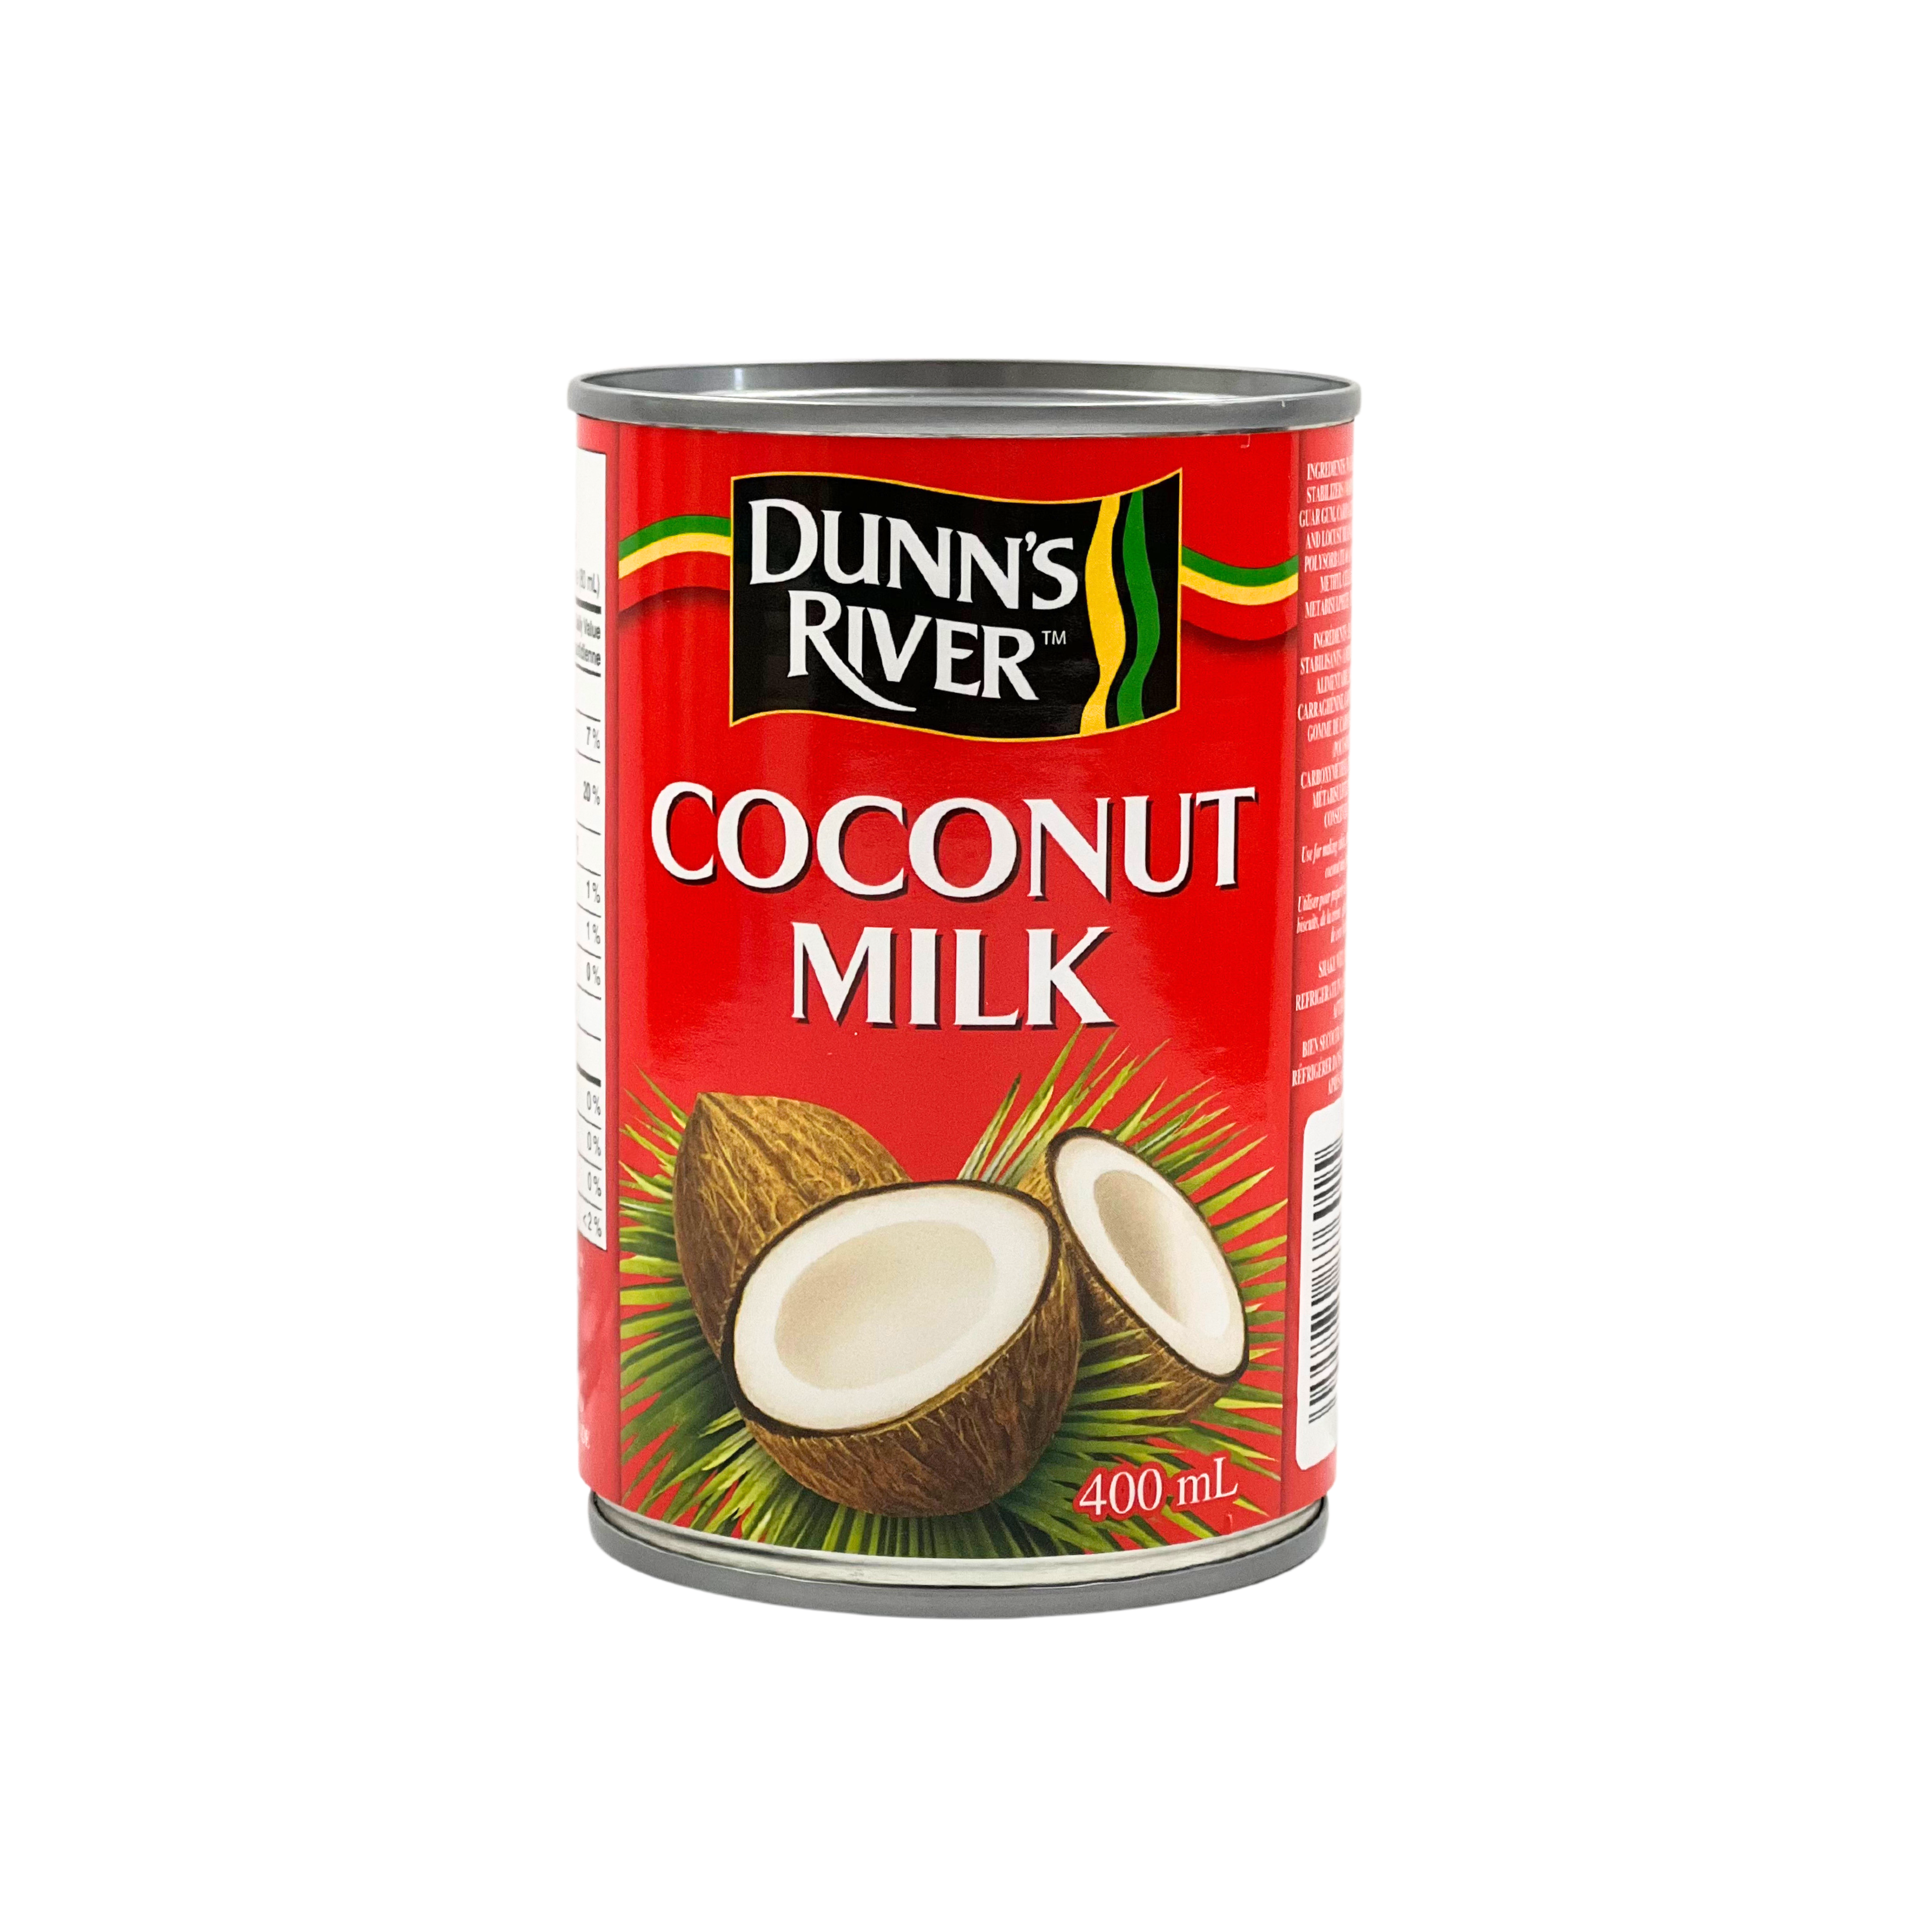 Dunns River Coconut Milk 400ml